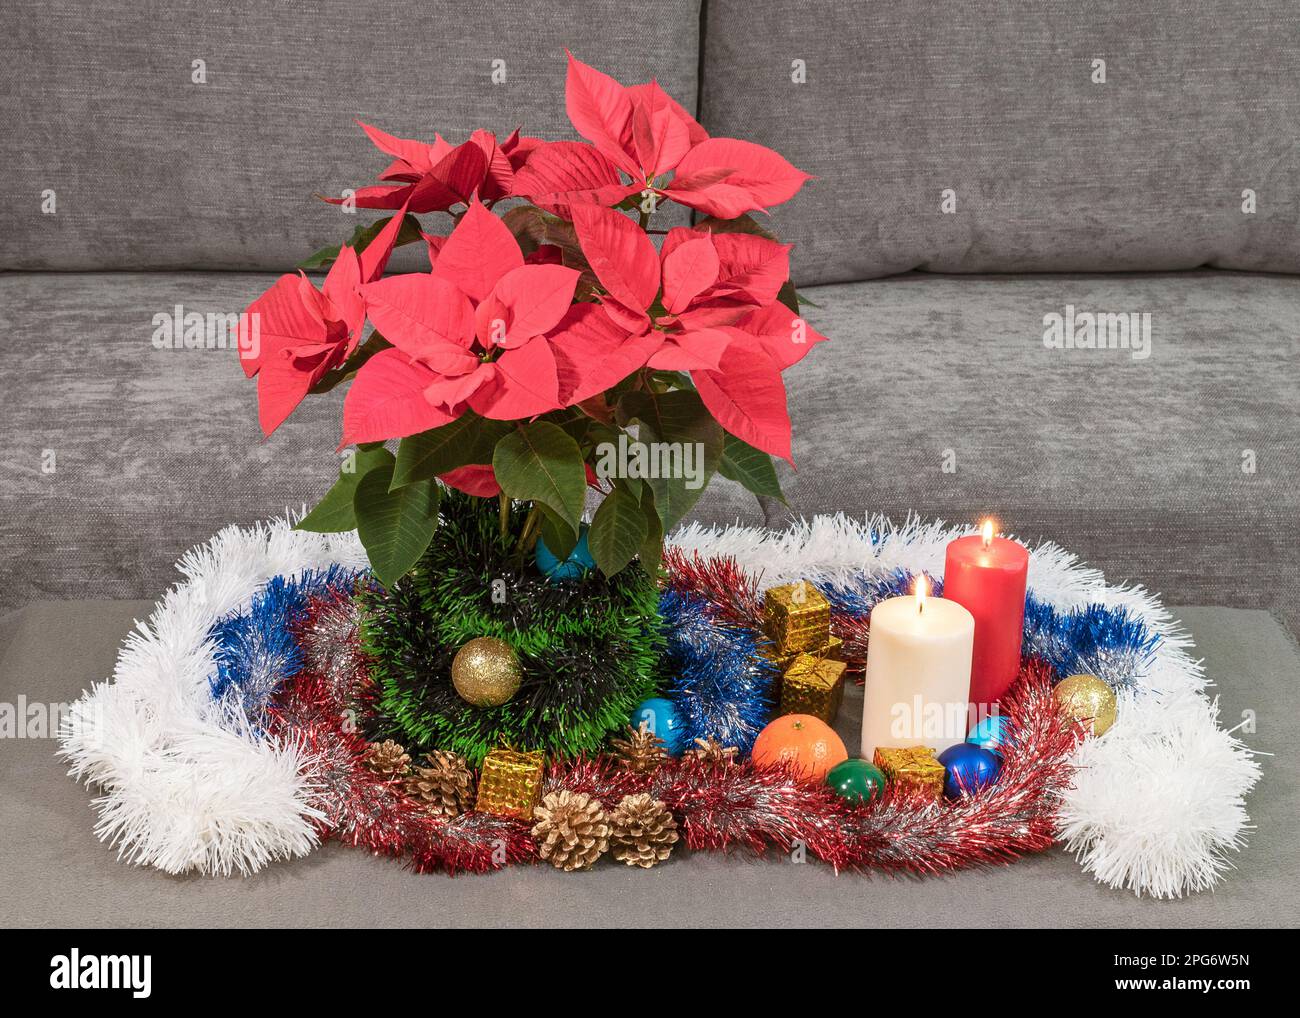 Inverno Natale decorazione tavolo vacanza con una poinsettia rosso brillante e ornamenti tradizionali con tinsel e due candele brucianti Foto Stock